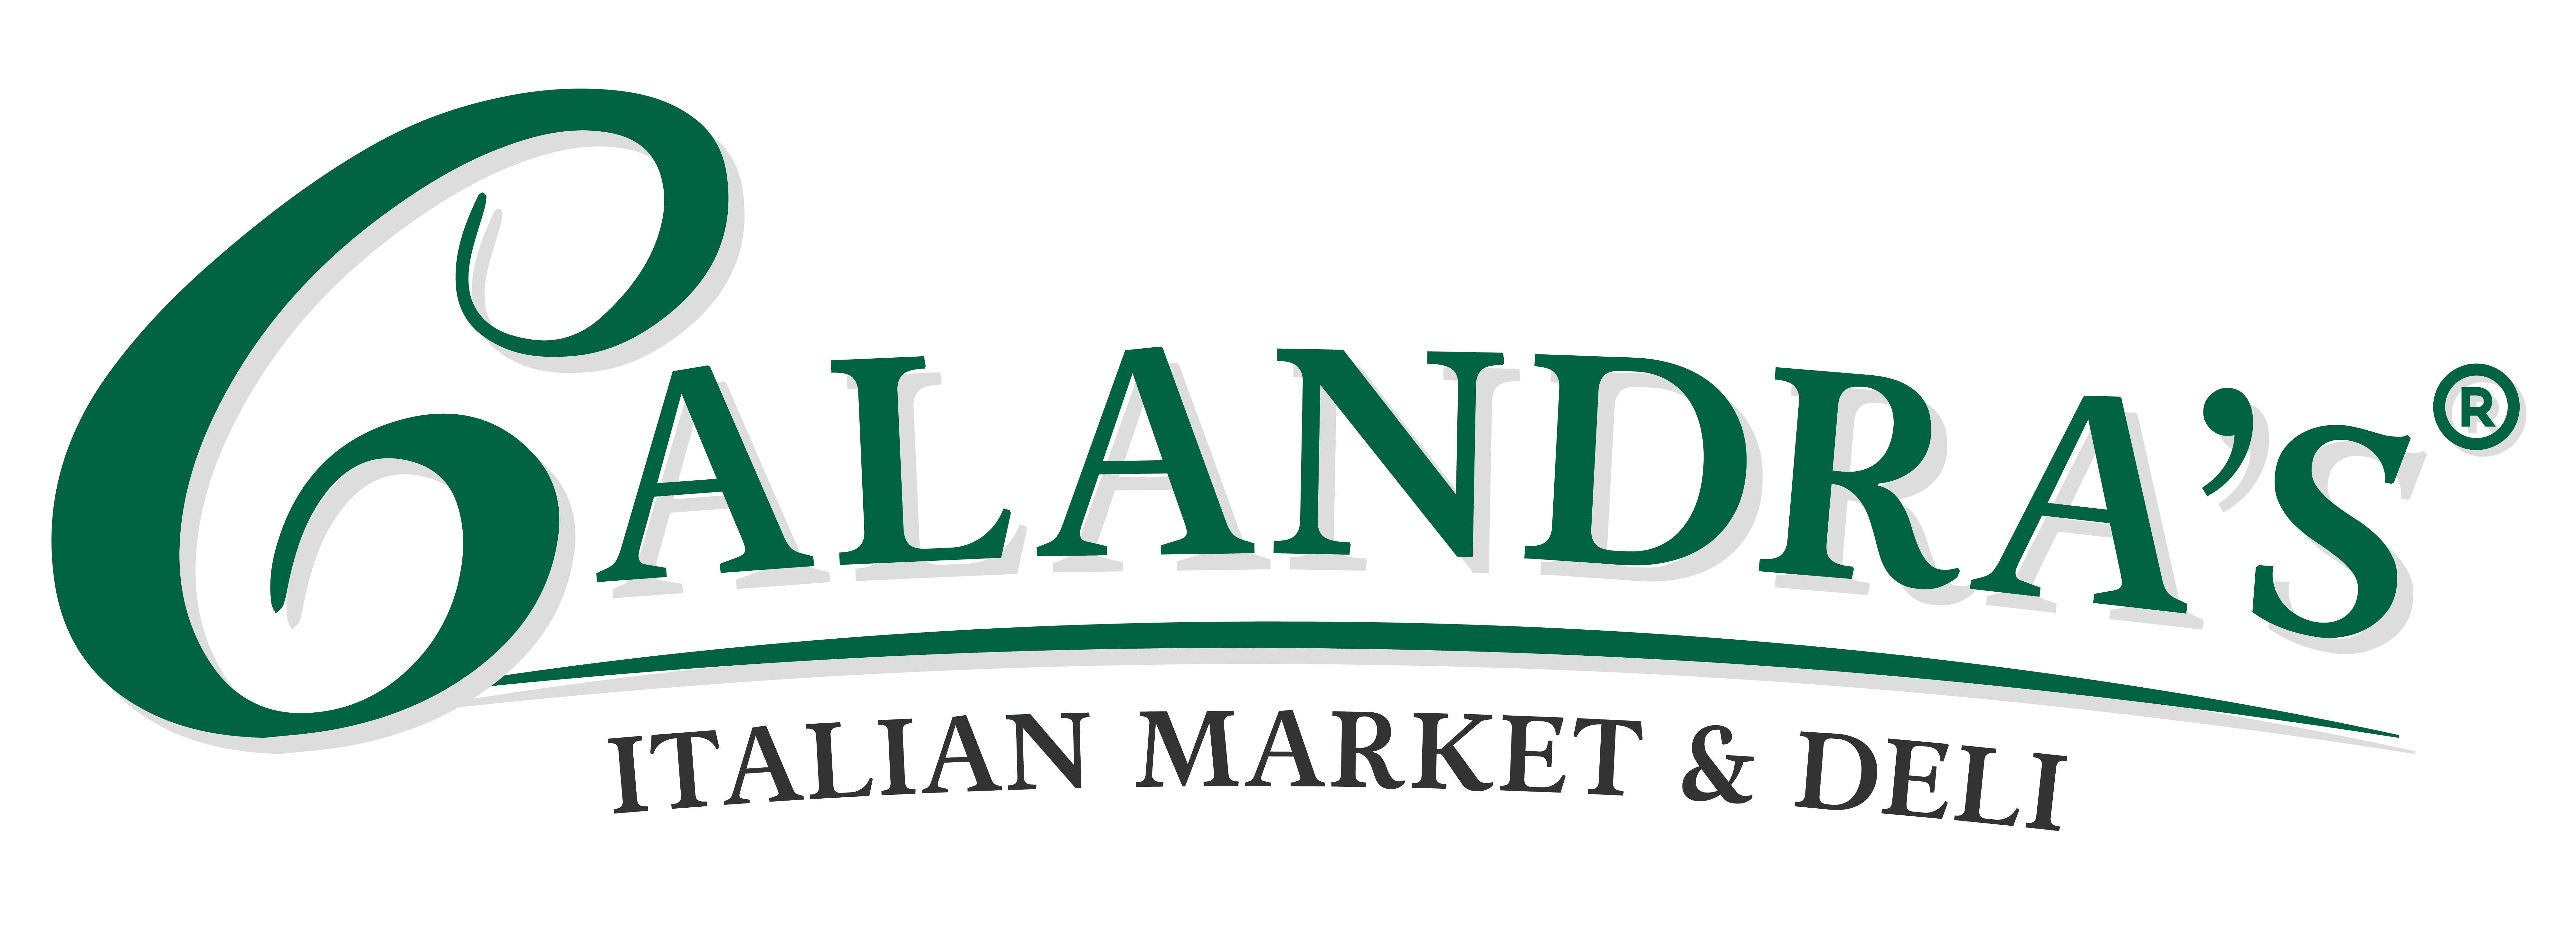 Calandra_s Italian Market _ Deli Logo